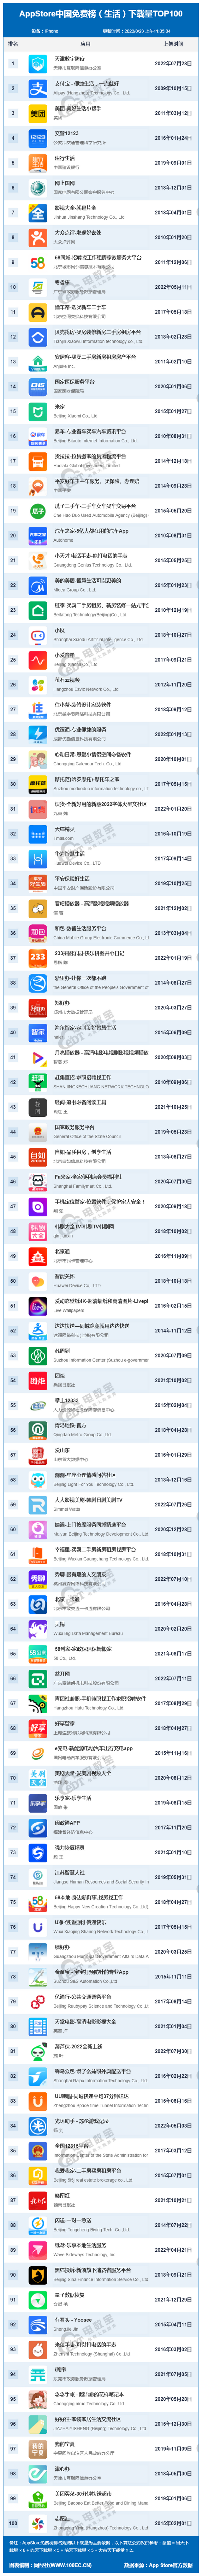 8月AppStore中国免费榜(生活)TOP100：支付宝 美团 58同城居前十